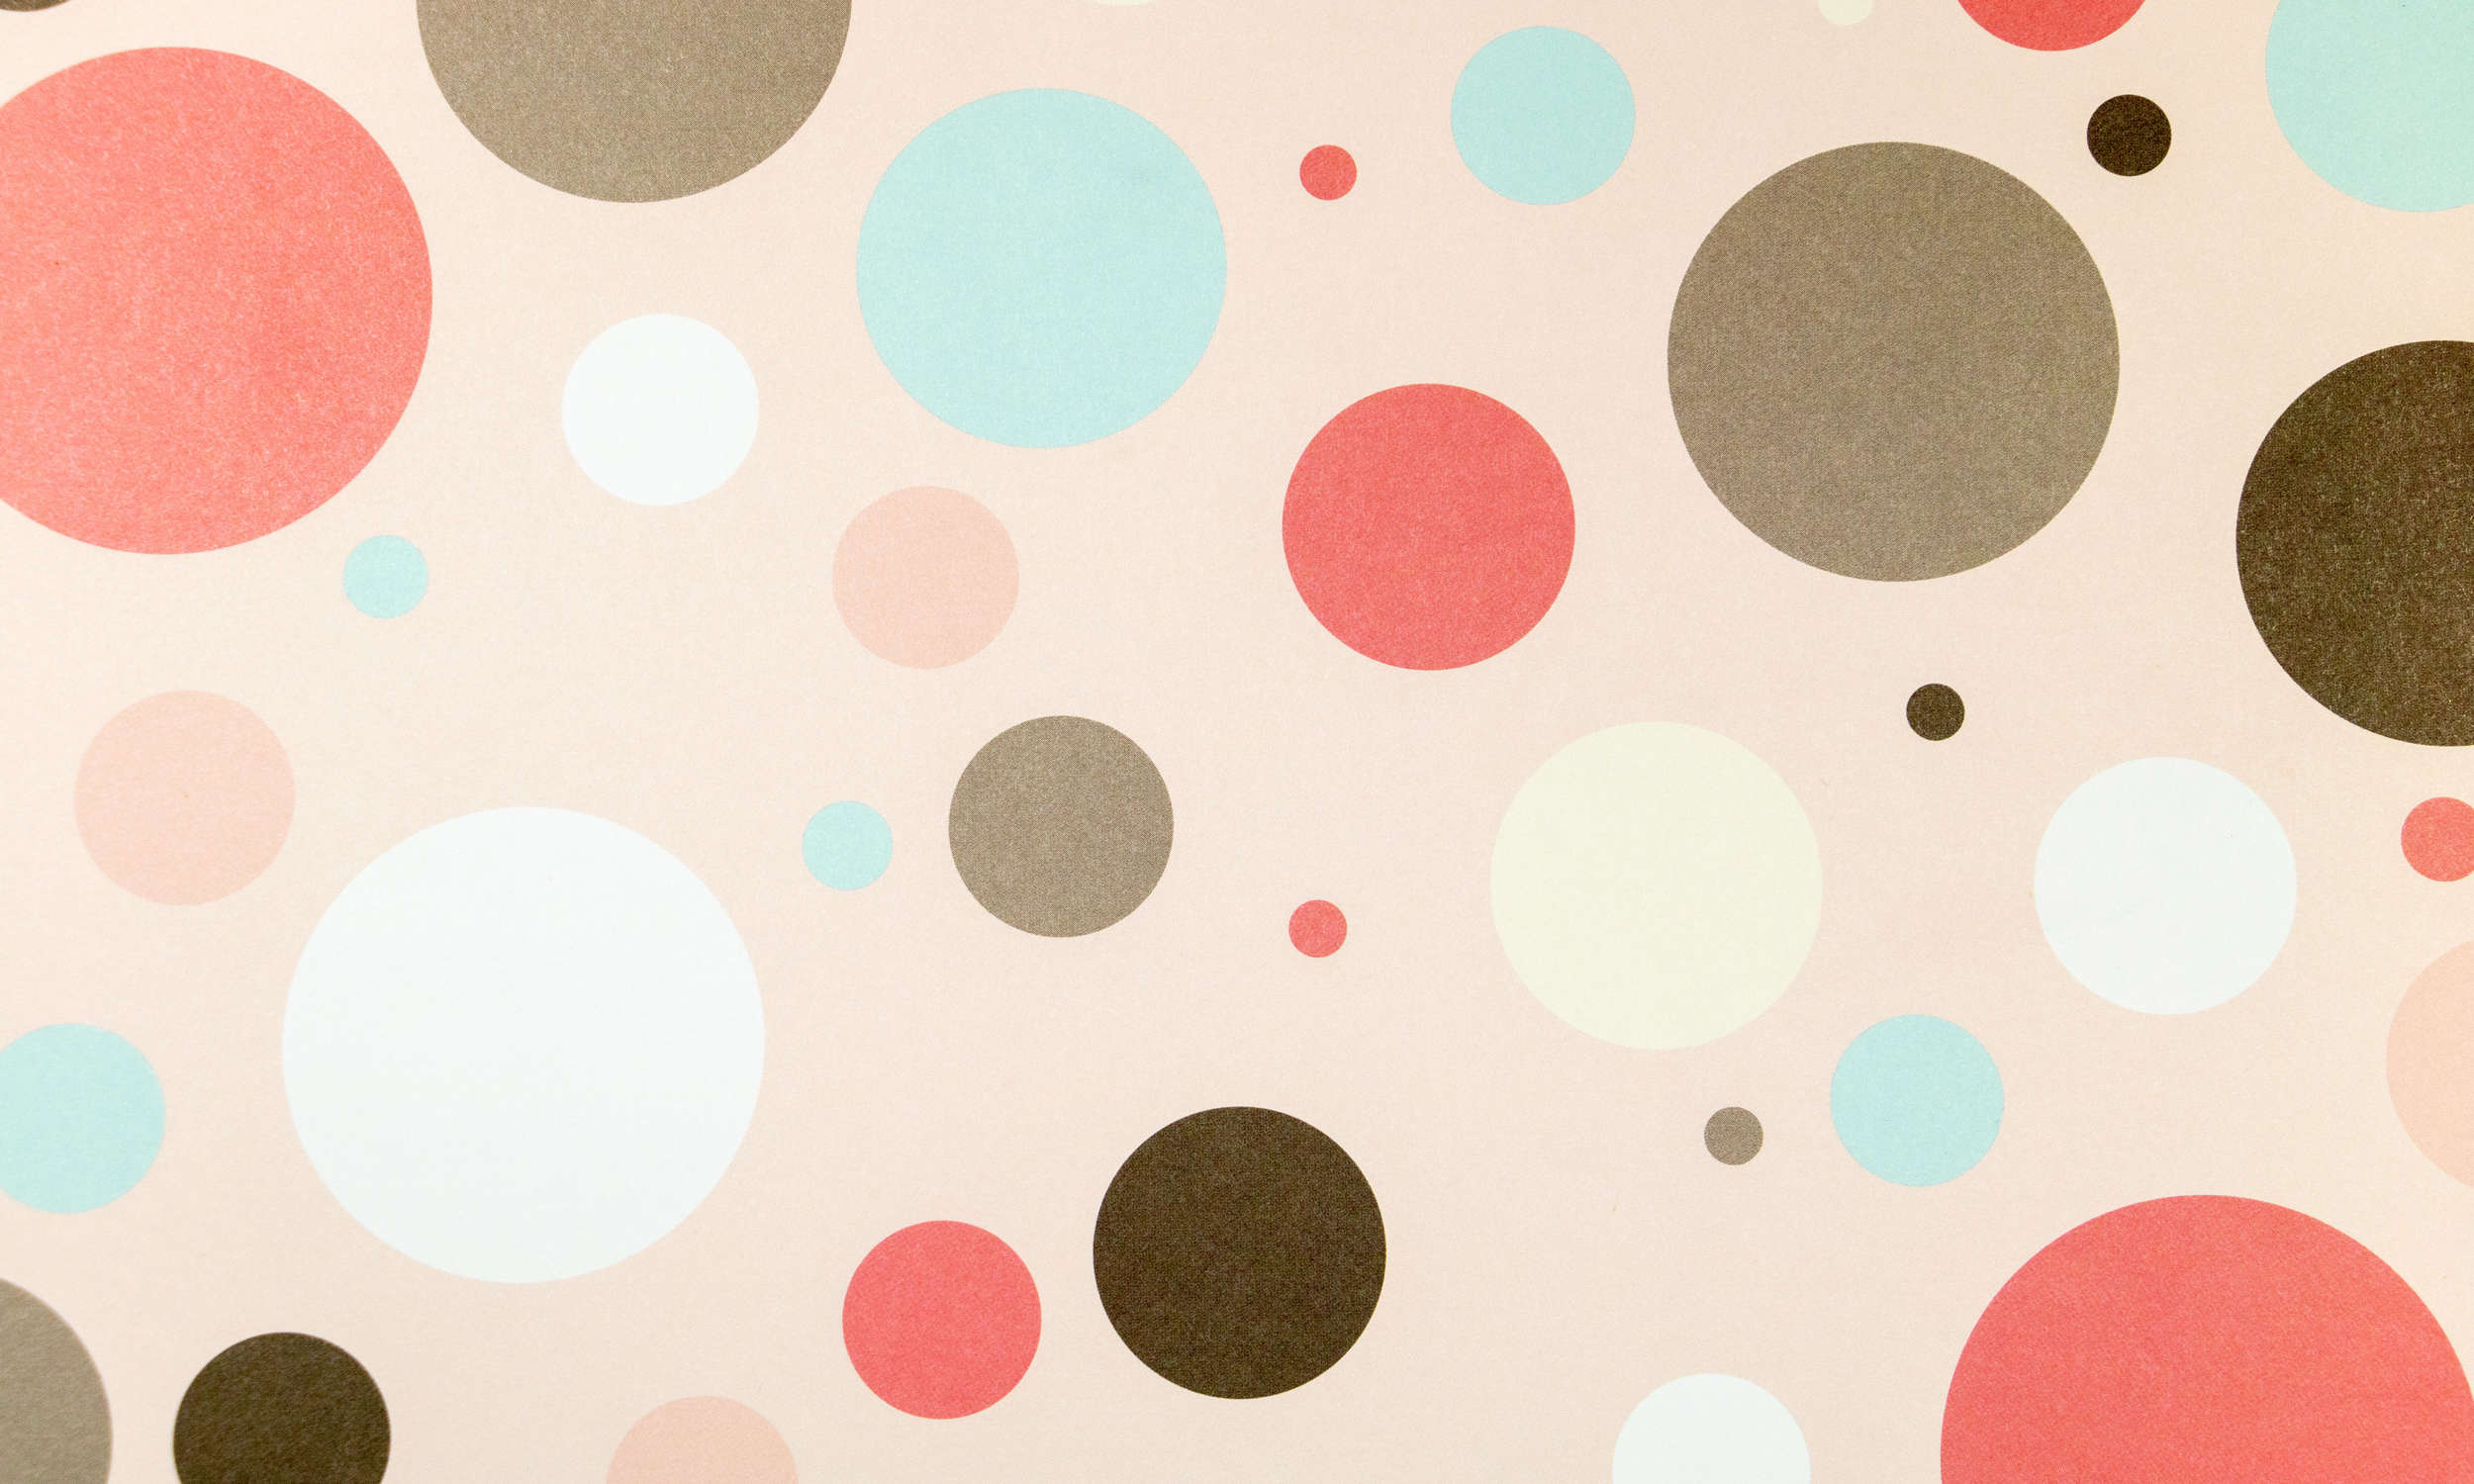             papier peint en papier pour chambre d'enfant avec cercles colorés - intissé lisse & mat
        